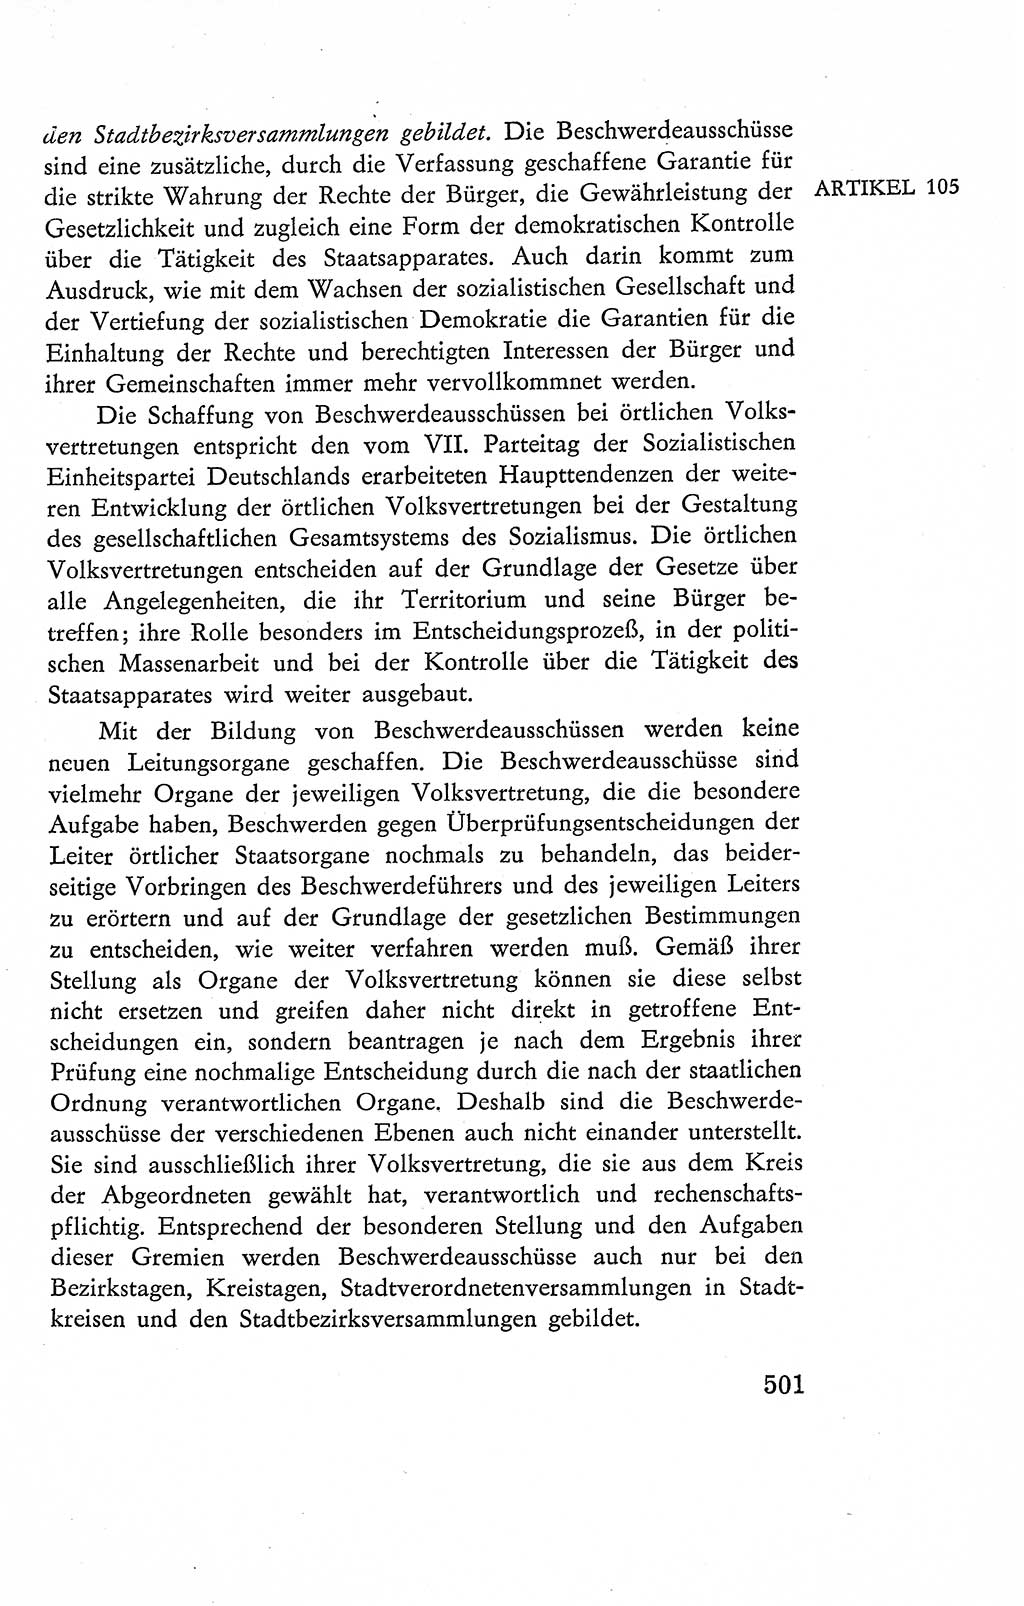 Verfassung der Deutschen Demokratischen Republik (DDR), Dokumente, Kommentar 1969, Band 2, Seite 501 (Verf. DDR Dok. Komm. 1969, Bd. 2, S. 501)